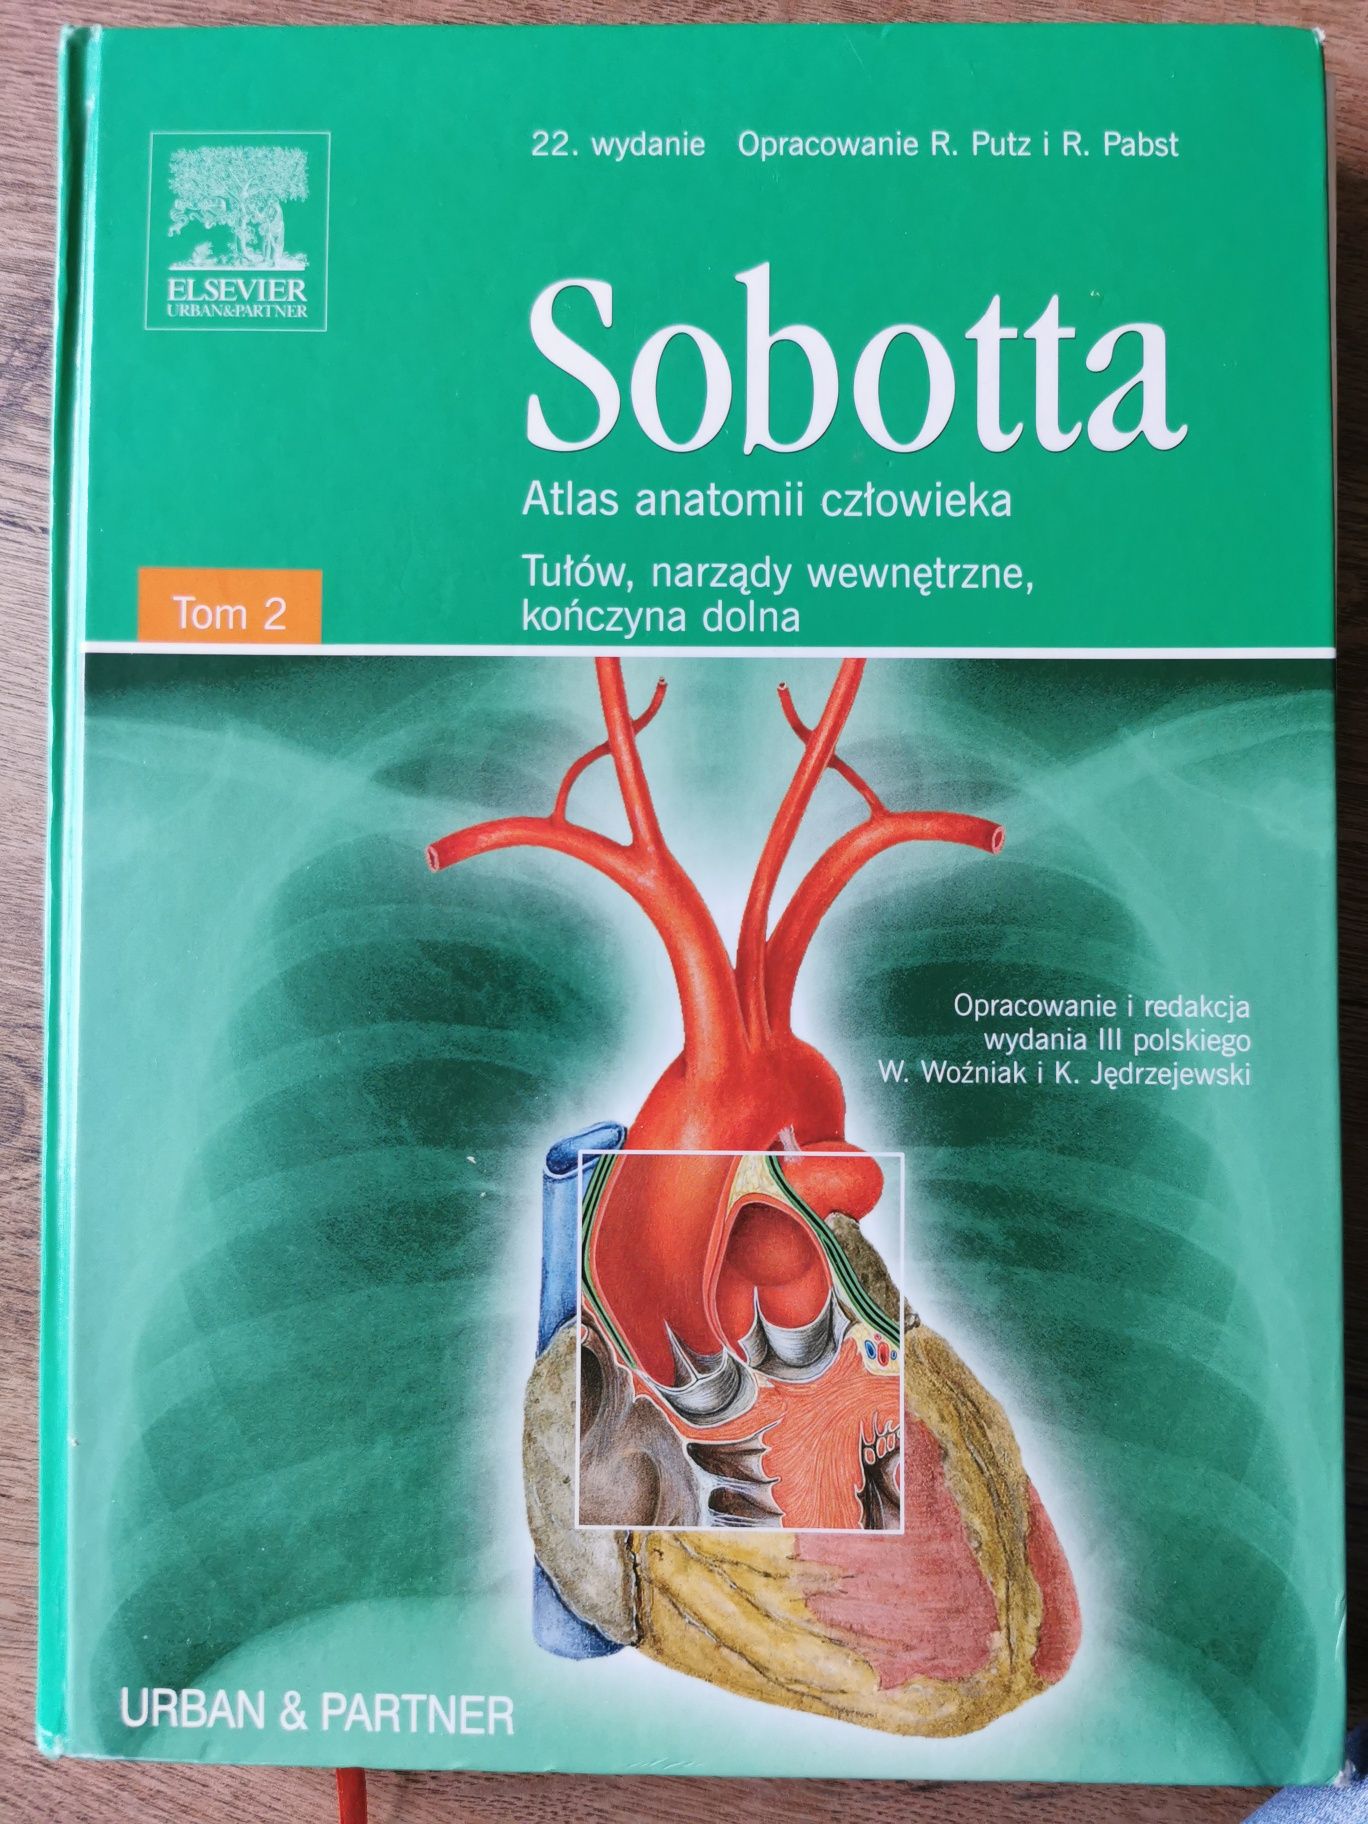 Sobotta Atlas anatomii człowieka tom II wyd 22,III polskie